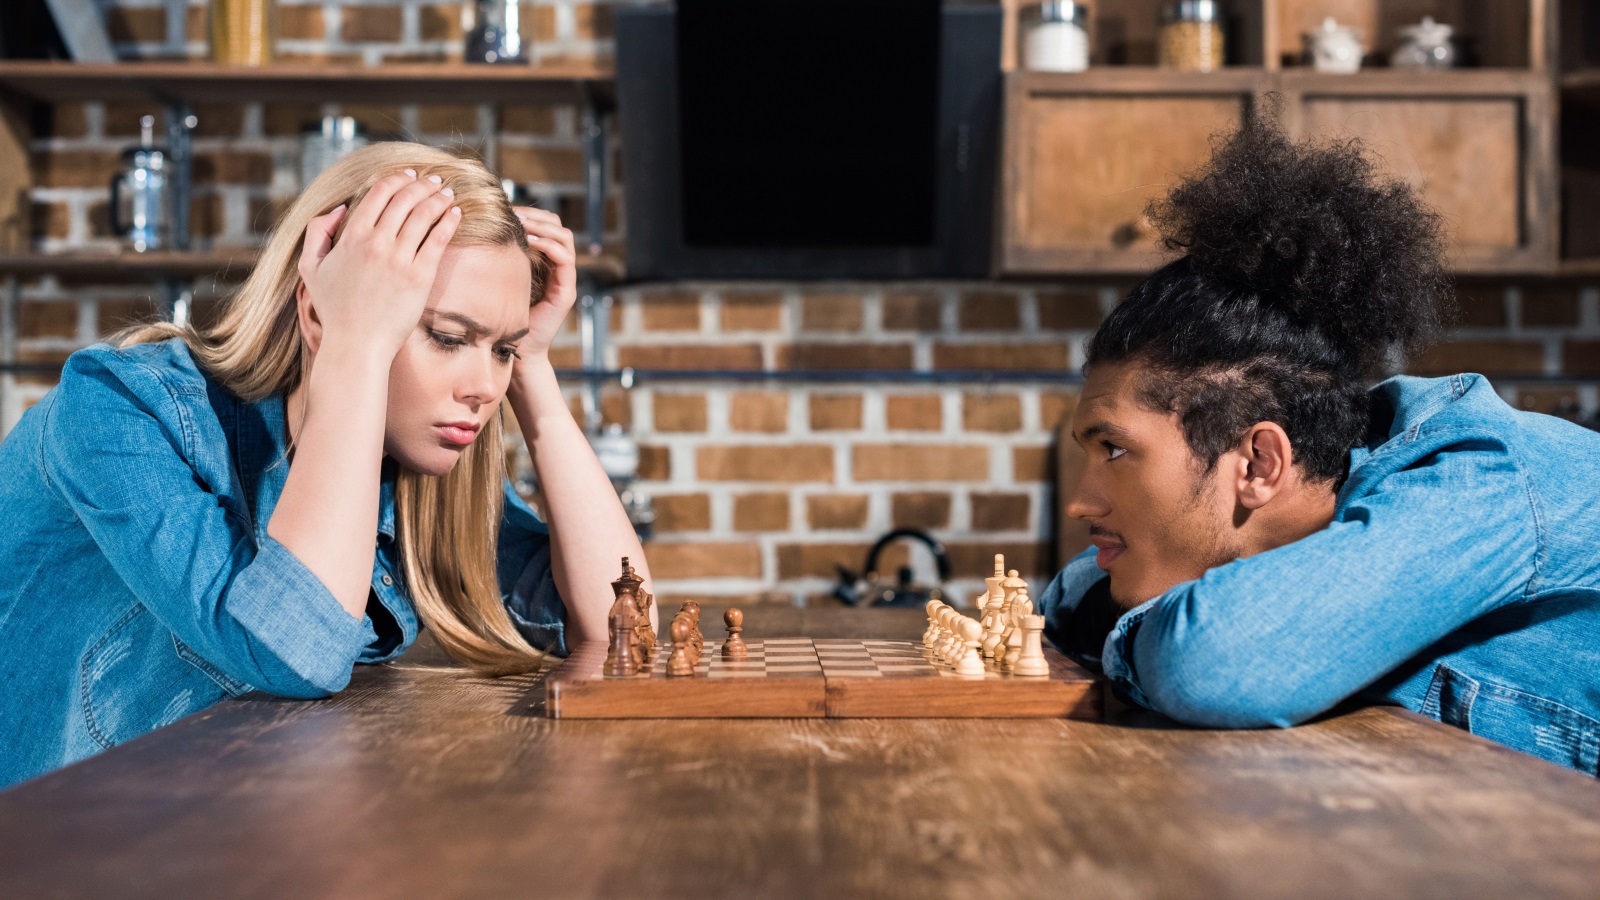 ‪الشطرنج يساعد على إنشاء مسارات عصبية جديدة مع تنشيط عملية التفكير‬ (مواقع التواصل)